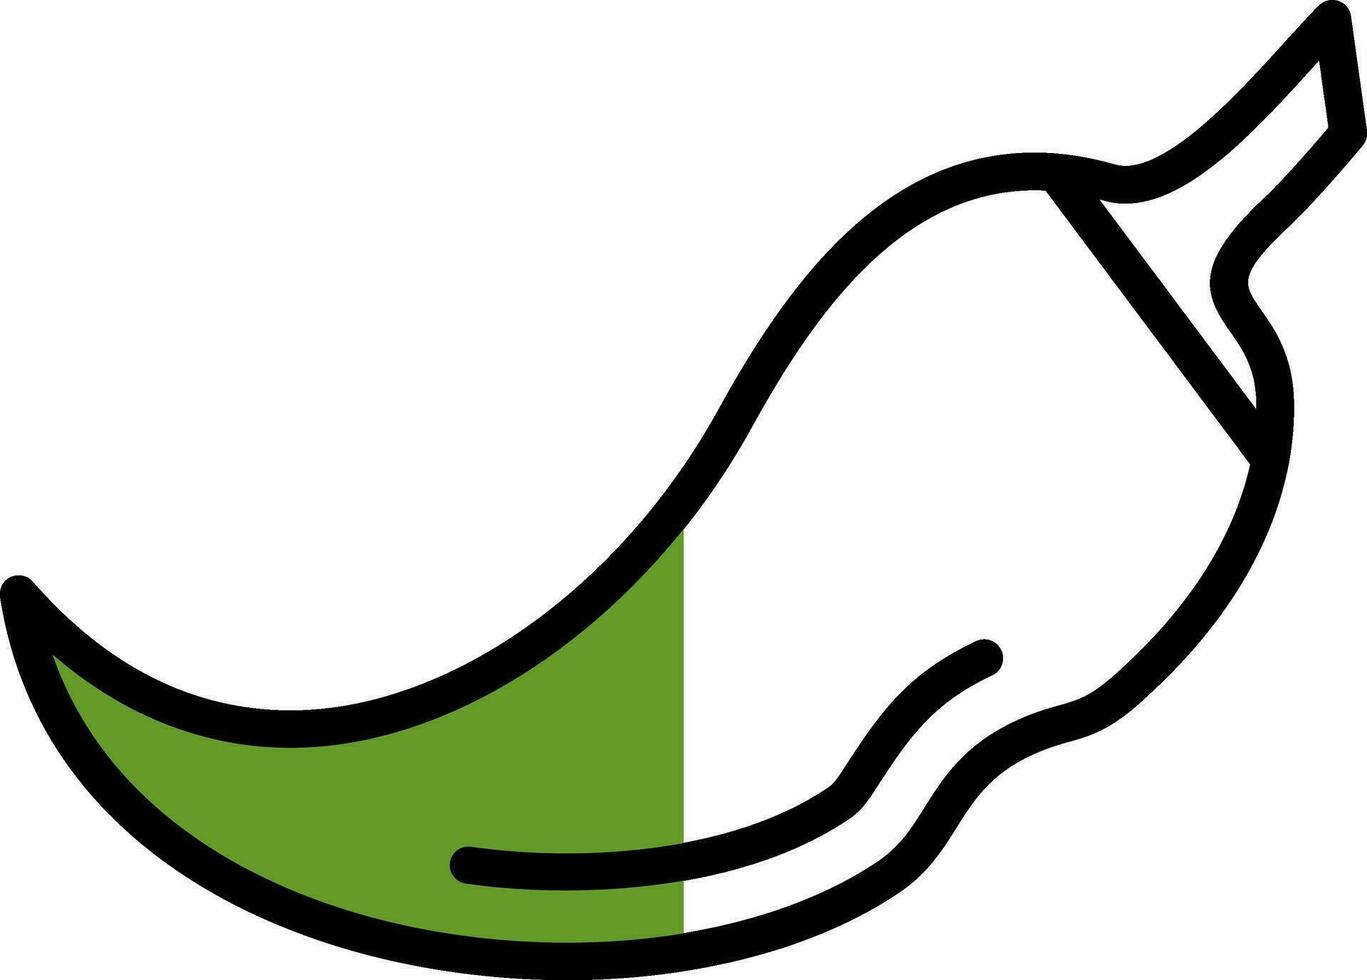 groen Chili vector icoon ontwerp